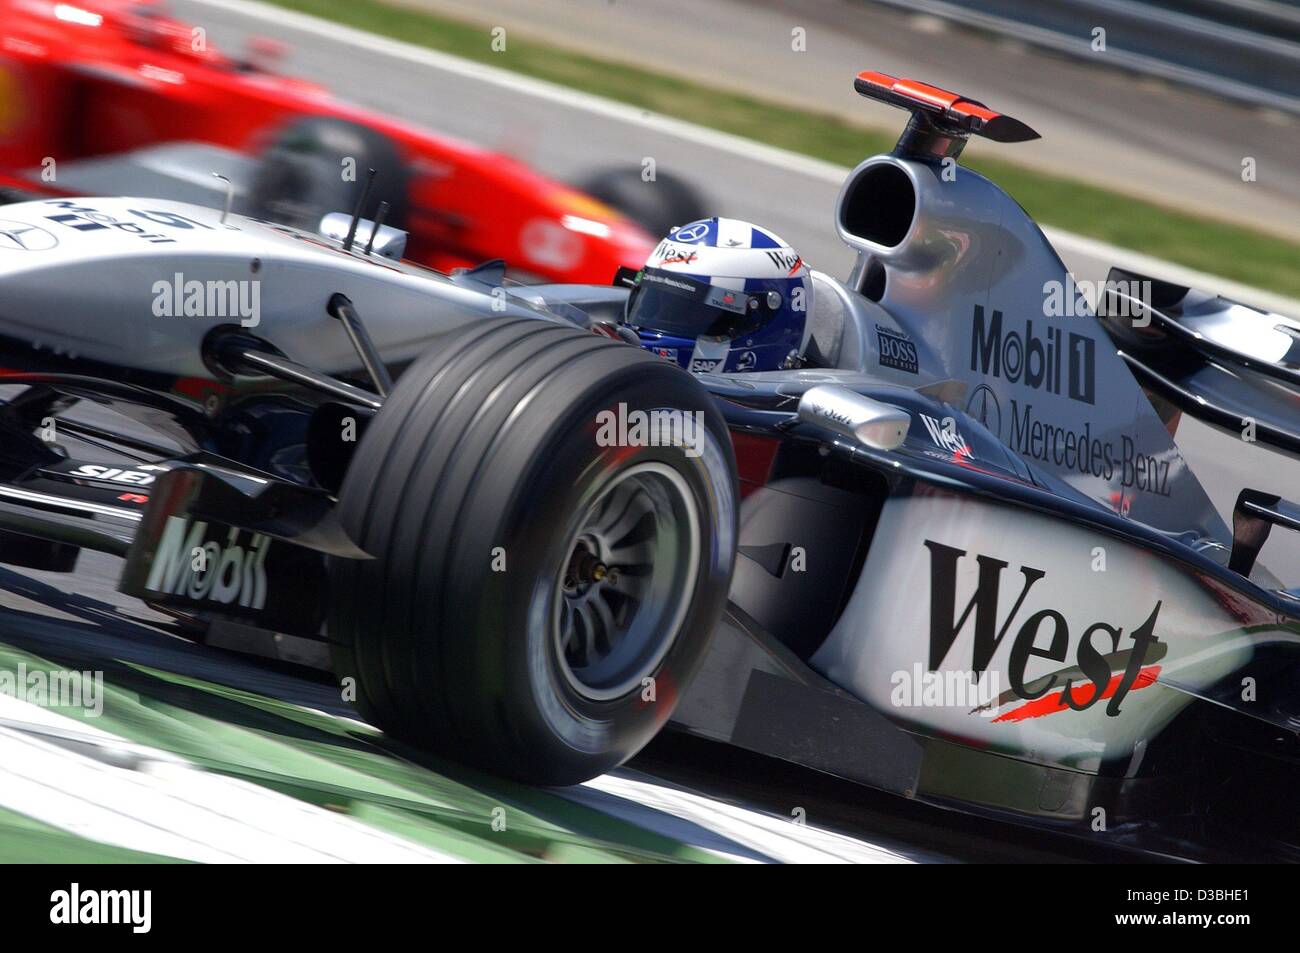 (Dpa) - Runde schottischen Formel 1 pilot David Coulthard (McLaren-Mercedes) Rennen entlang der Rennstrecke mit seinem Formel 1-Rennen-Auto in der qualifizierten Ausbildung während des österreichischen grand Prix auf der Rennstrecke A1-Ring in Zeltweg, Österreich, 16. Mai 2003. Die österreichischen grand Prix, der sechsten Rac ist Stockfoto